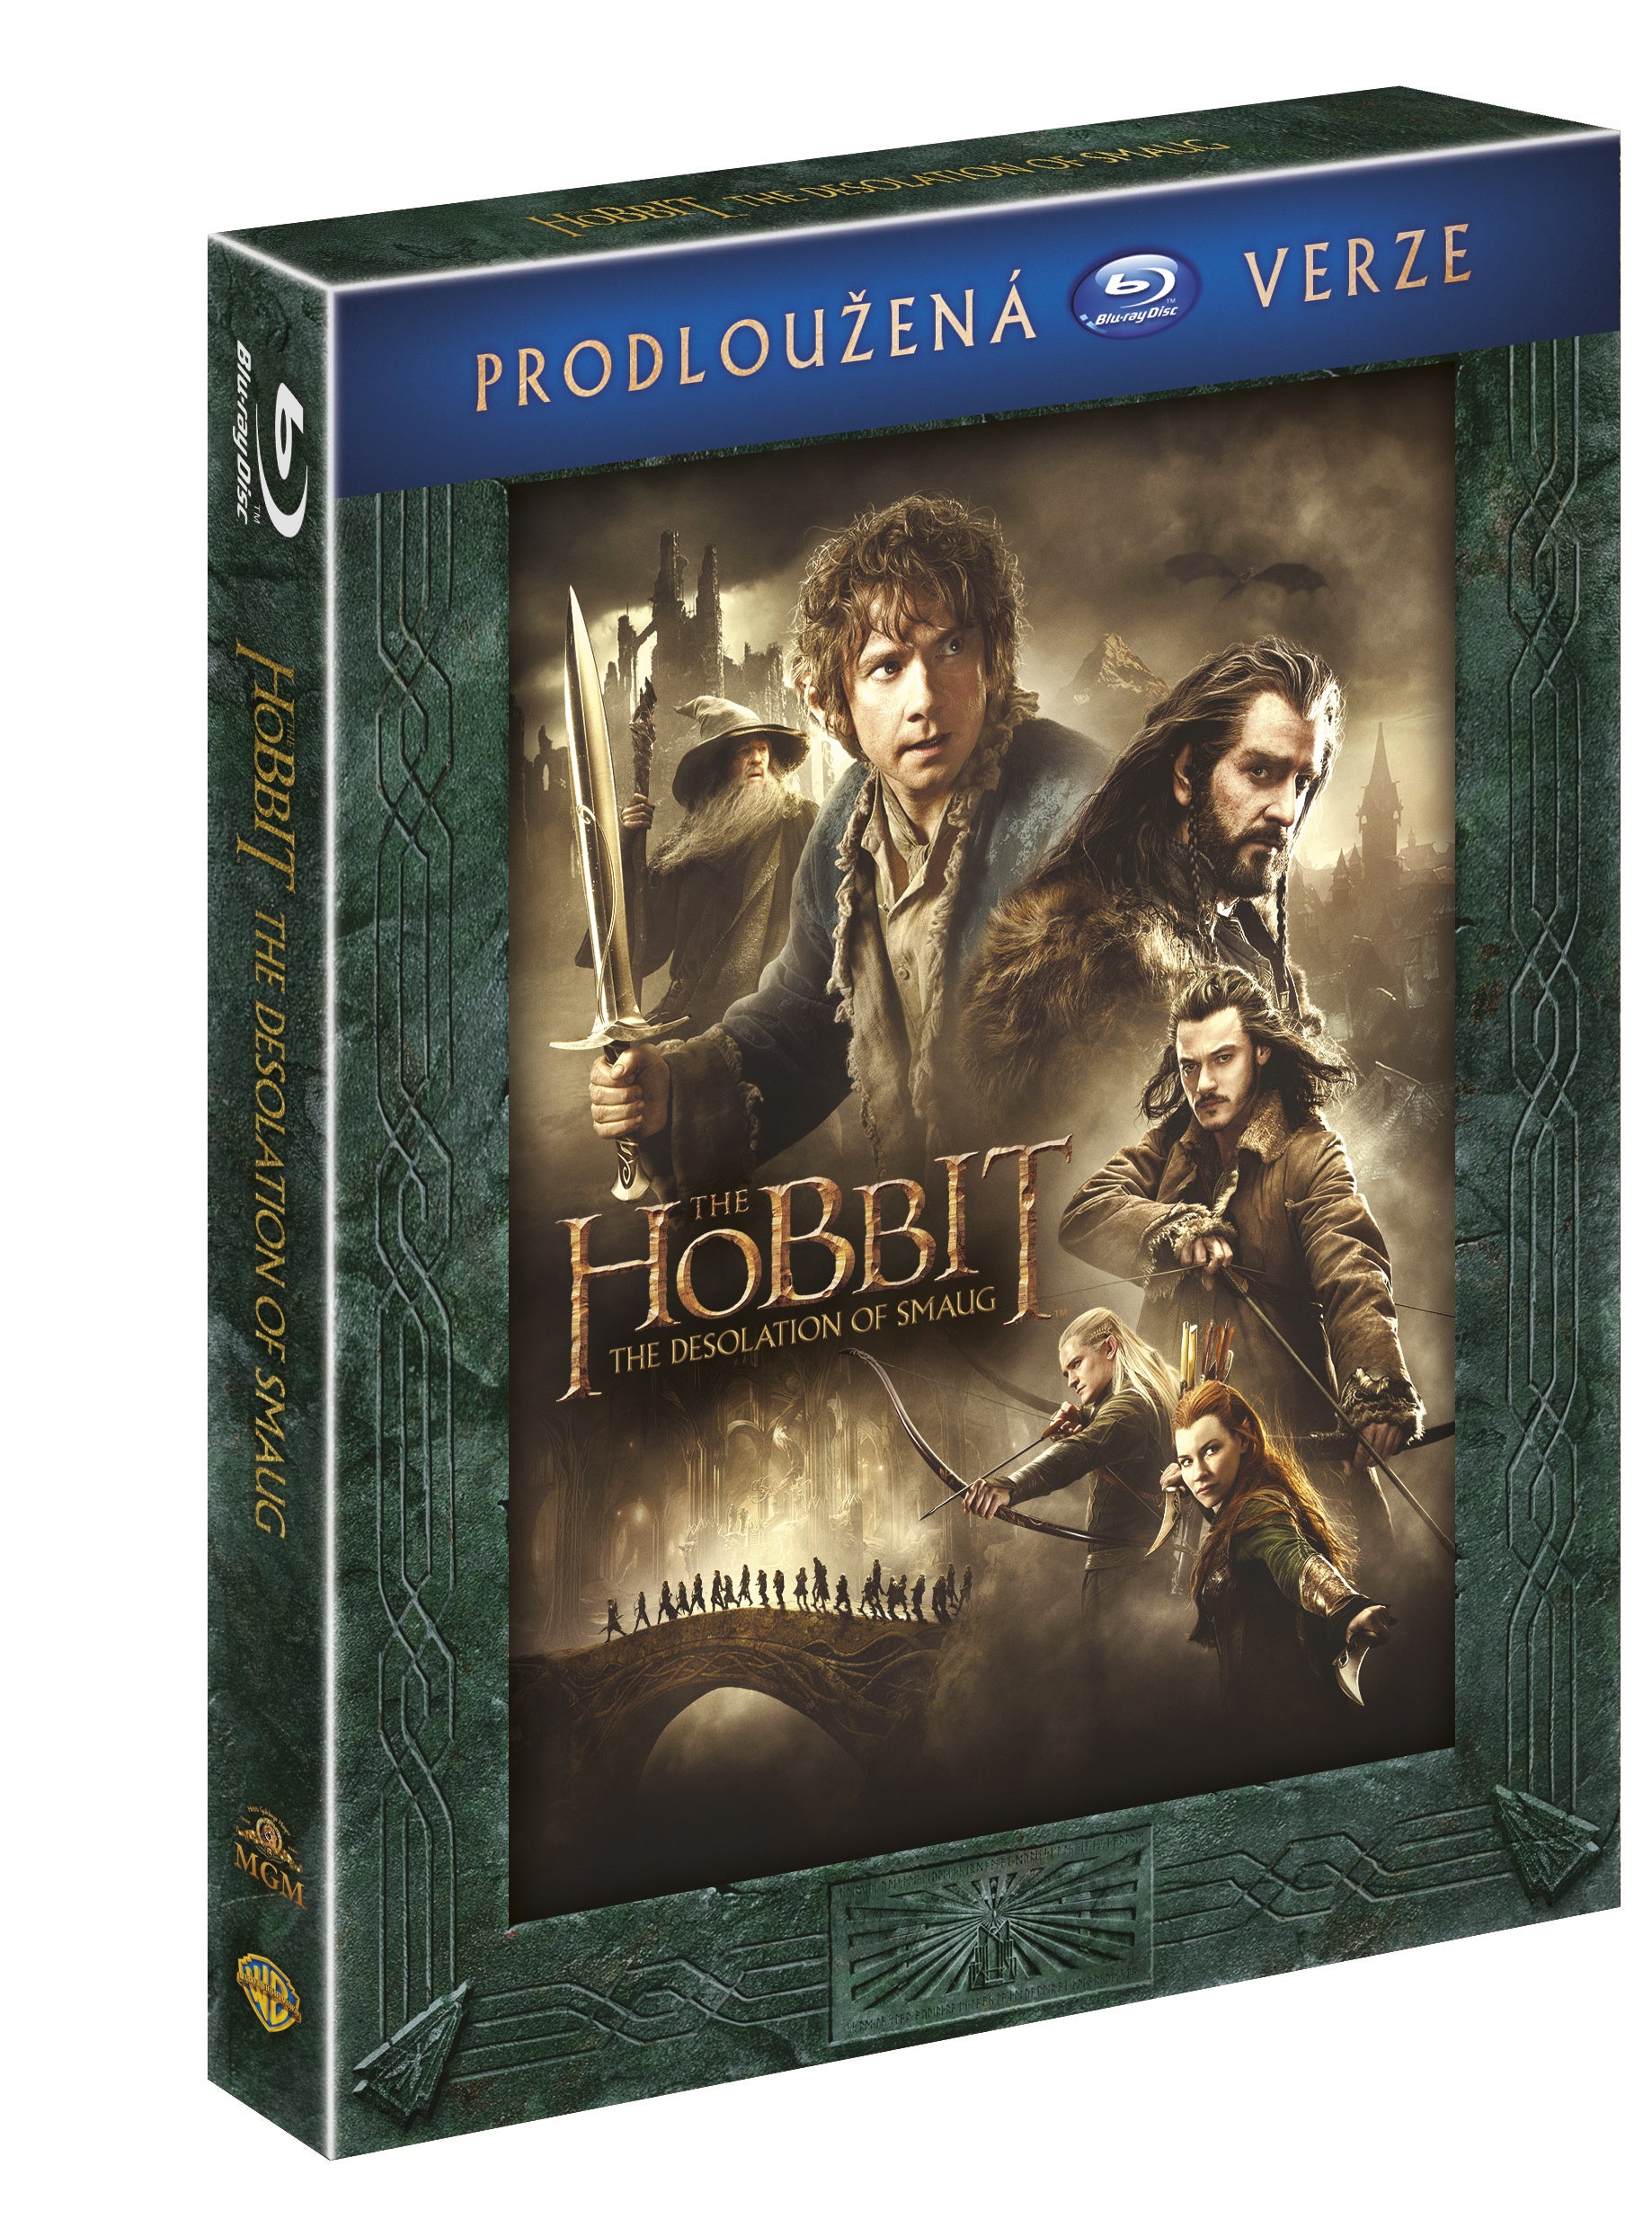 Hobit: Smakova draci poust - prodlouzena verze 3BD / The Hobbit: The Desolation of Smaug - Extended Edition - Czech version